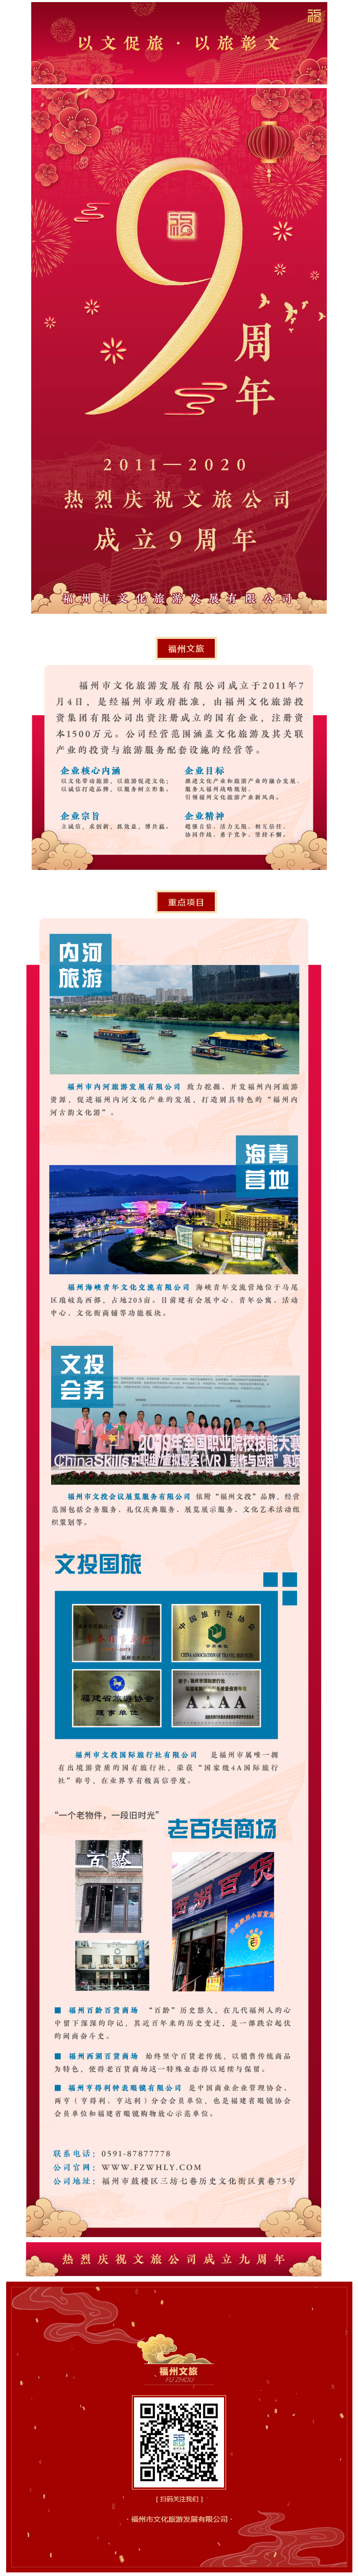 福州文旅丨热烈庆祝福州市文化旅游发展有限公司成立九周年.png